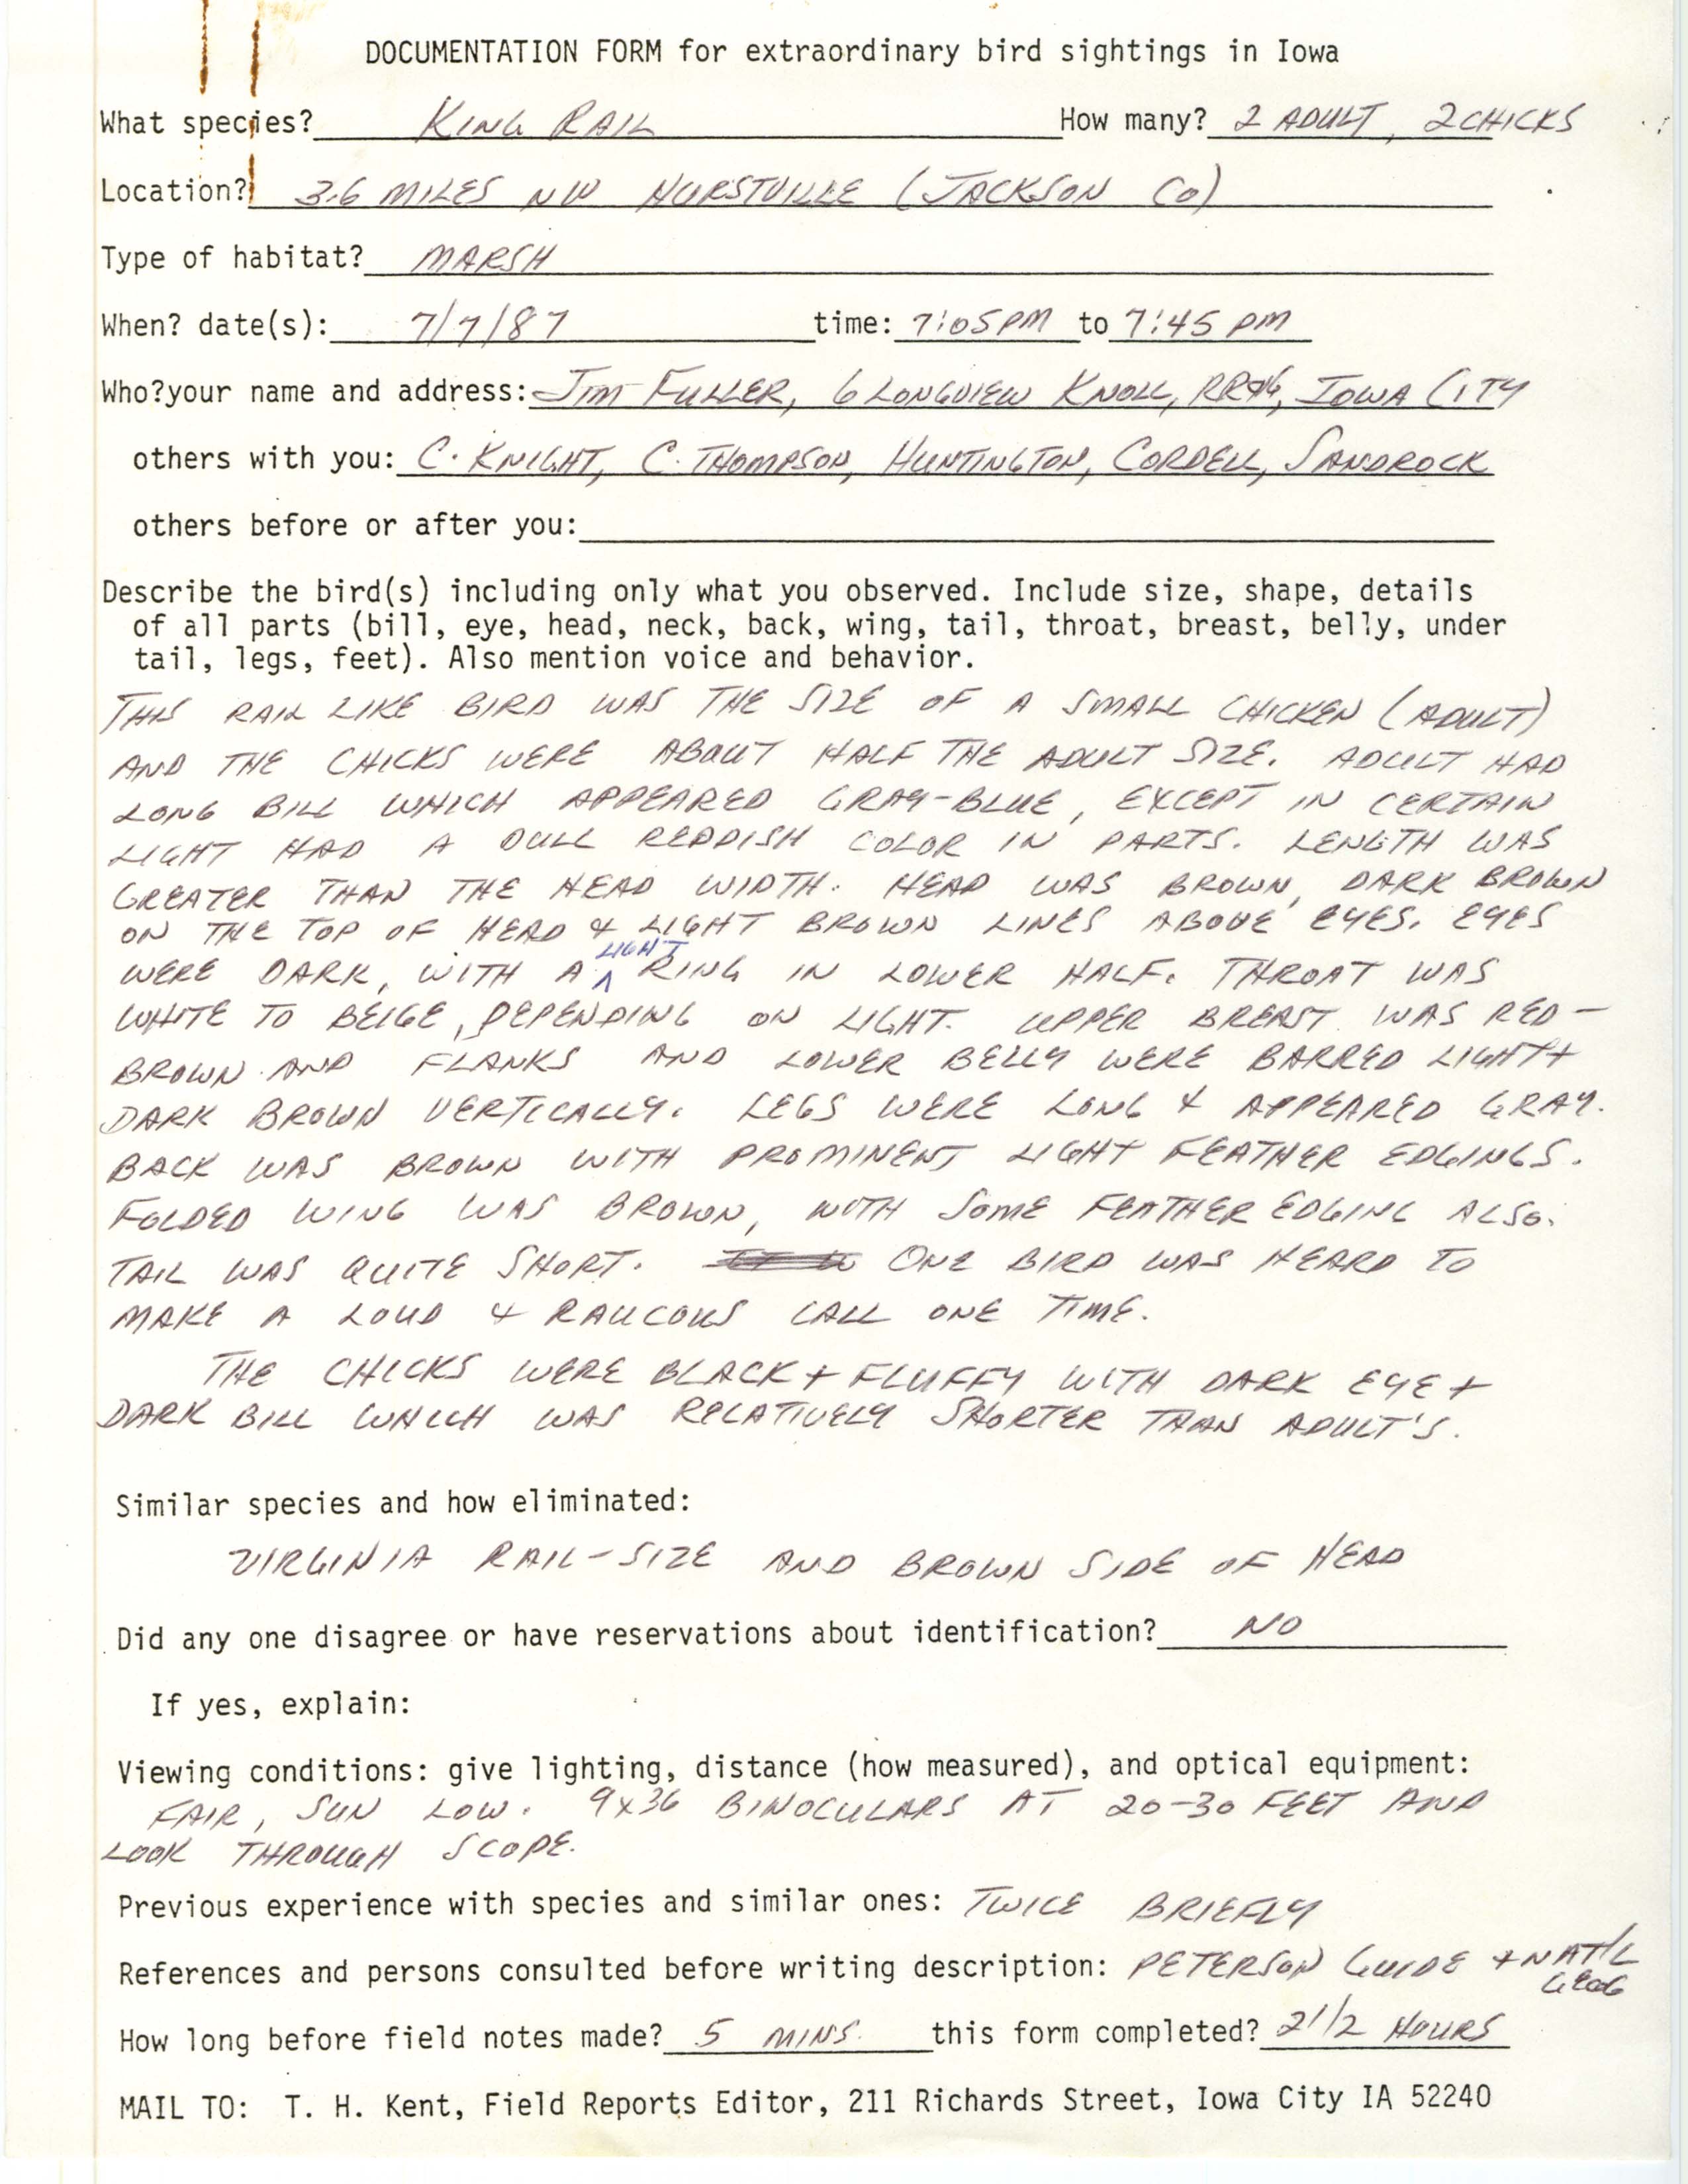 Rare bird documentation form for King Rail at Hurstville, 1987